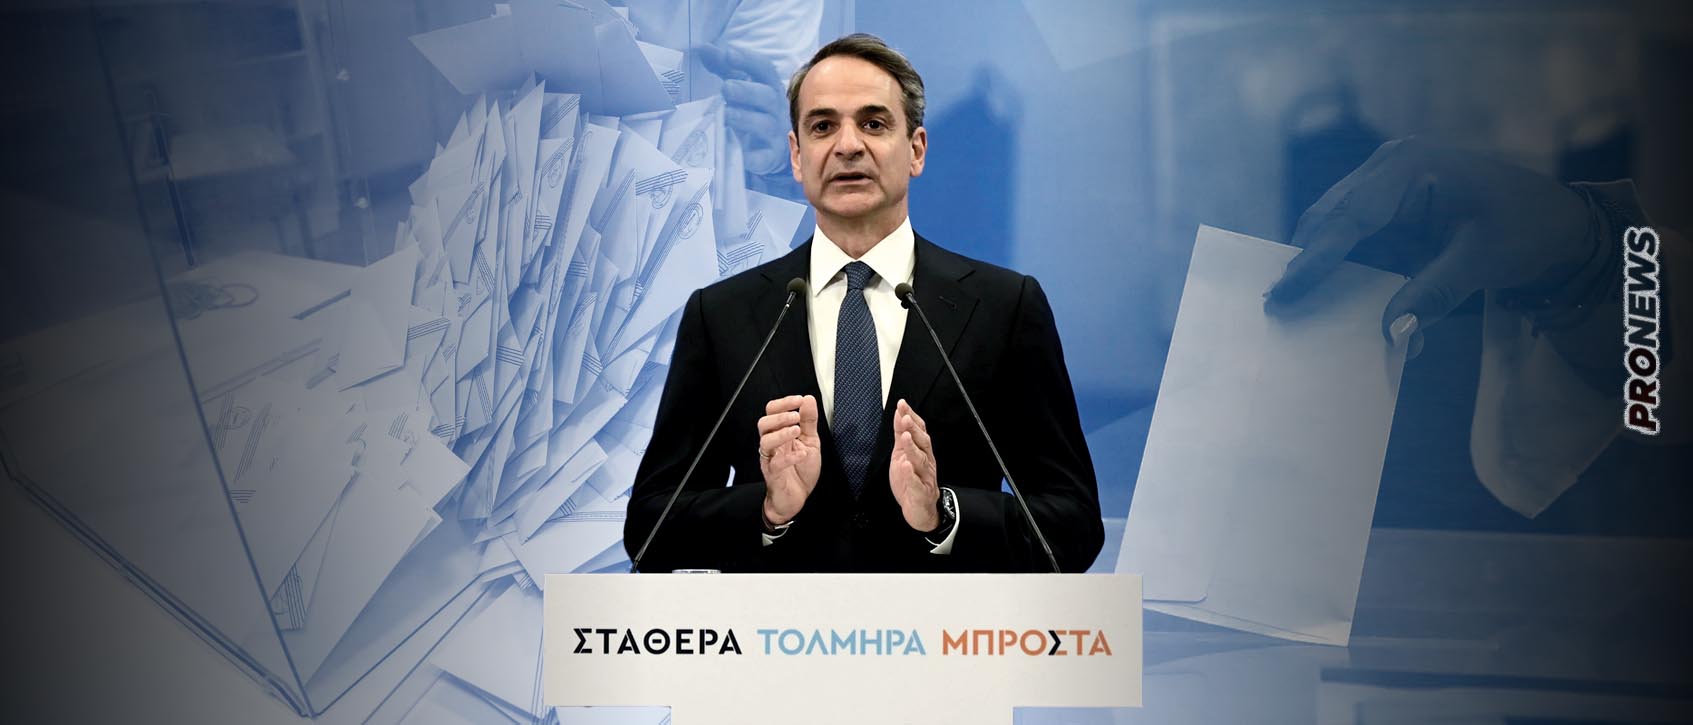 Η Κομισιόν επιβεβαιώνει pronews.gr: «Δεν αποδεχόμαστε τα προεκλογικά μέτρα Κ.Μητσοτάκη – Σταματήστε τα προγράμματα στήριξης»!